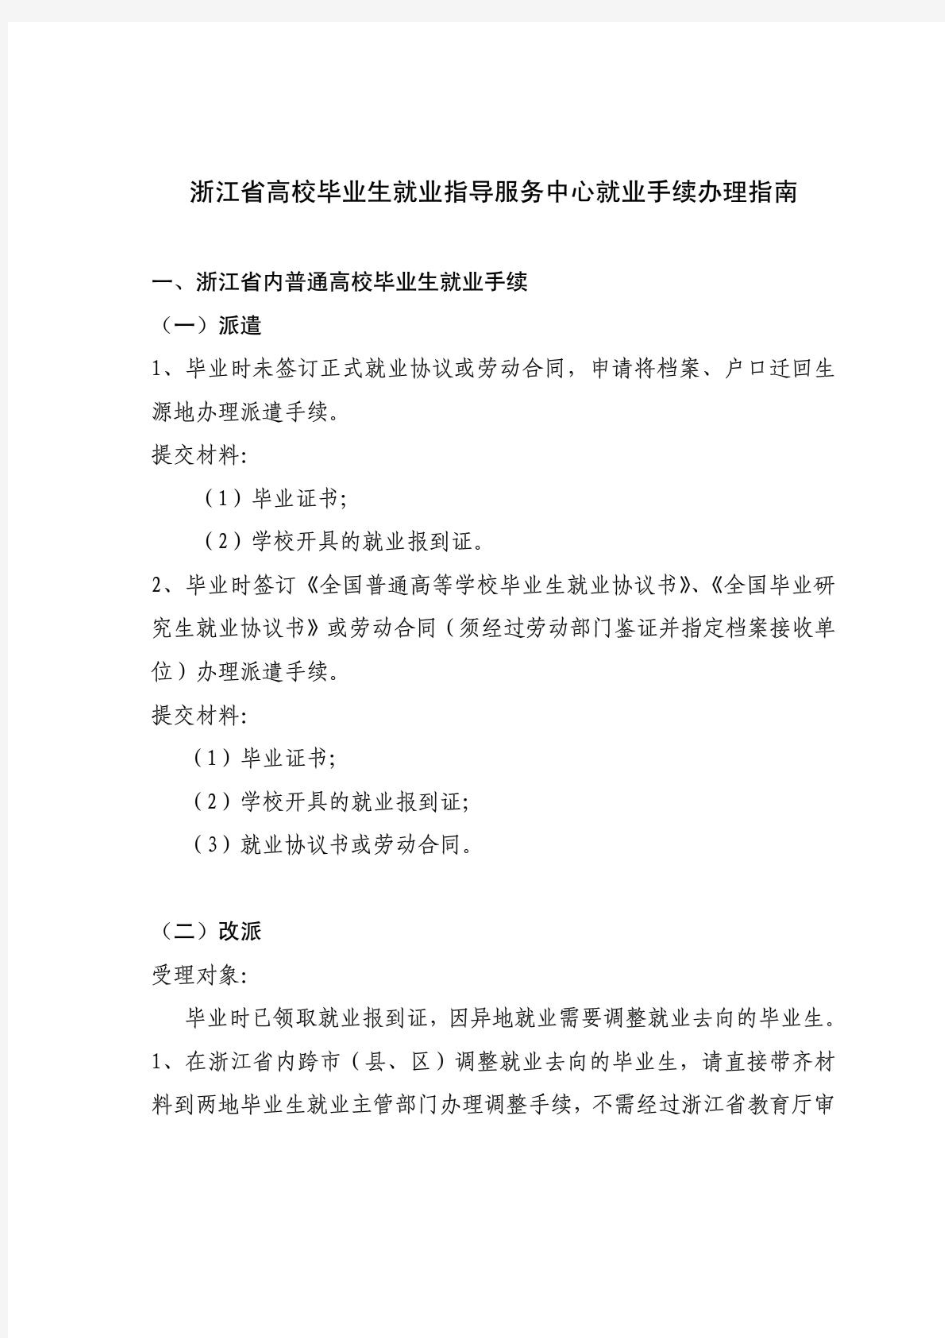 浙江省高校毕业生就业指导服务中心就业手续办理指南